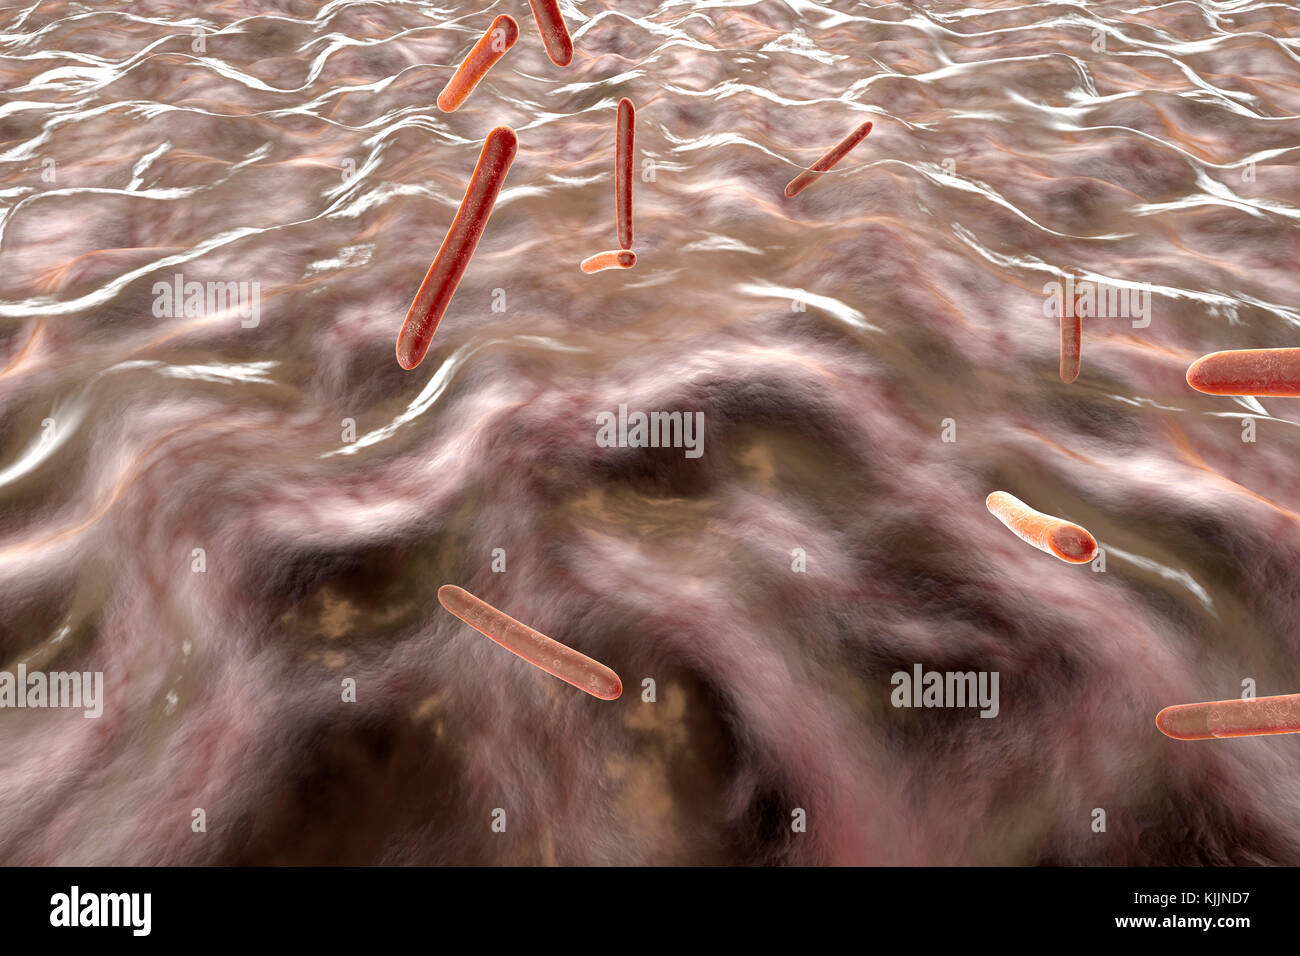 Illustration en rendu 3D, visualisation des bactéries de la tuberculose dans un organisme Banque D'Images